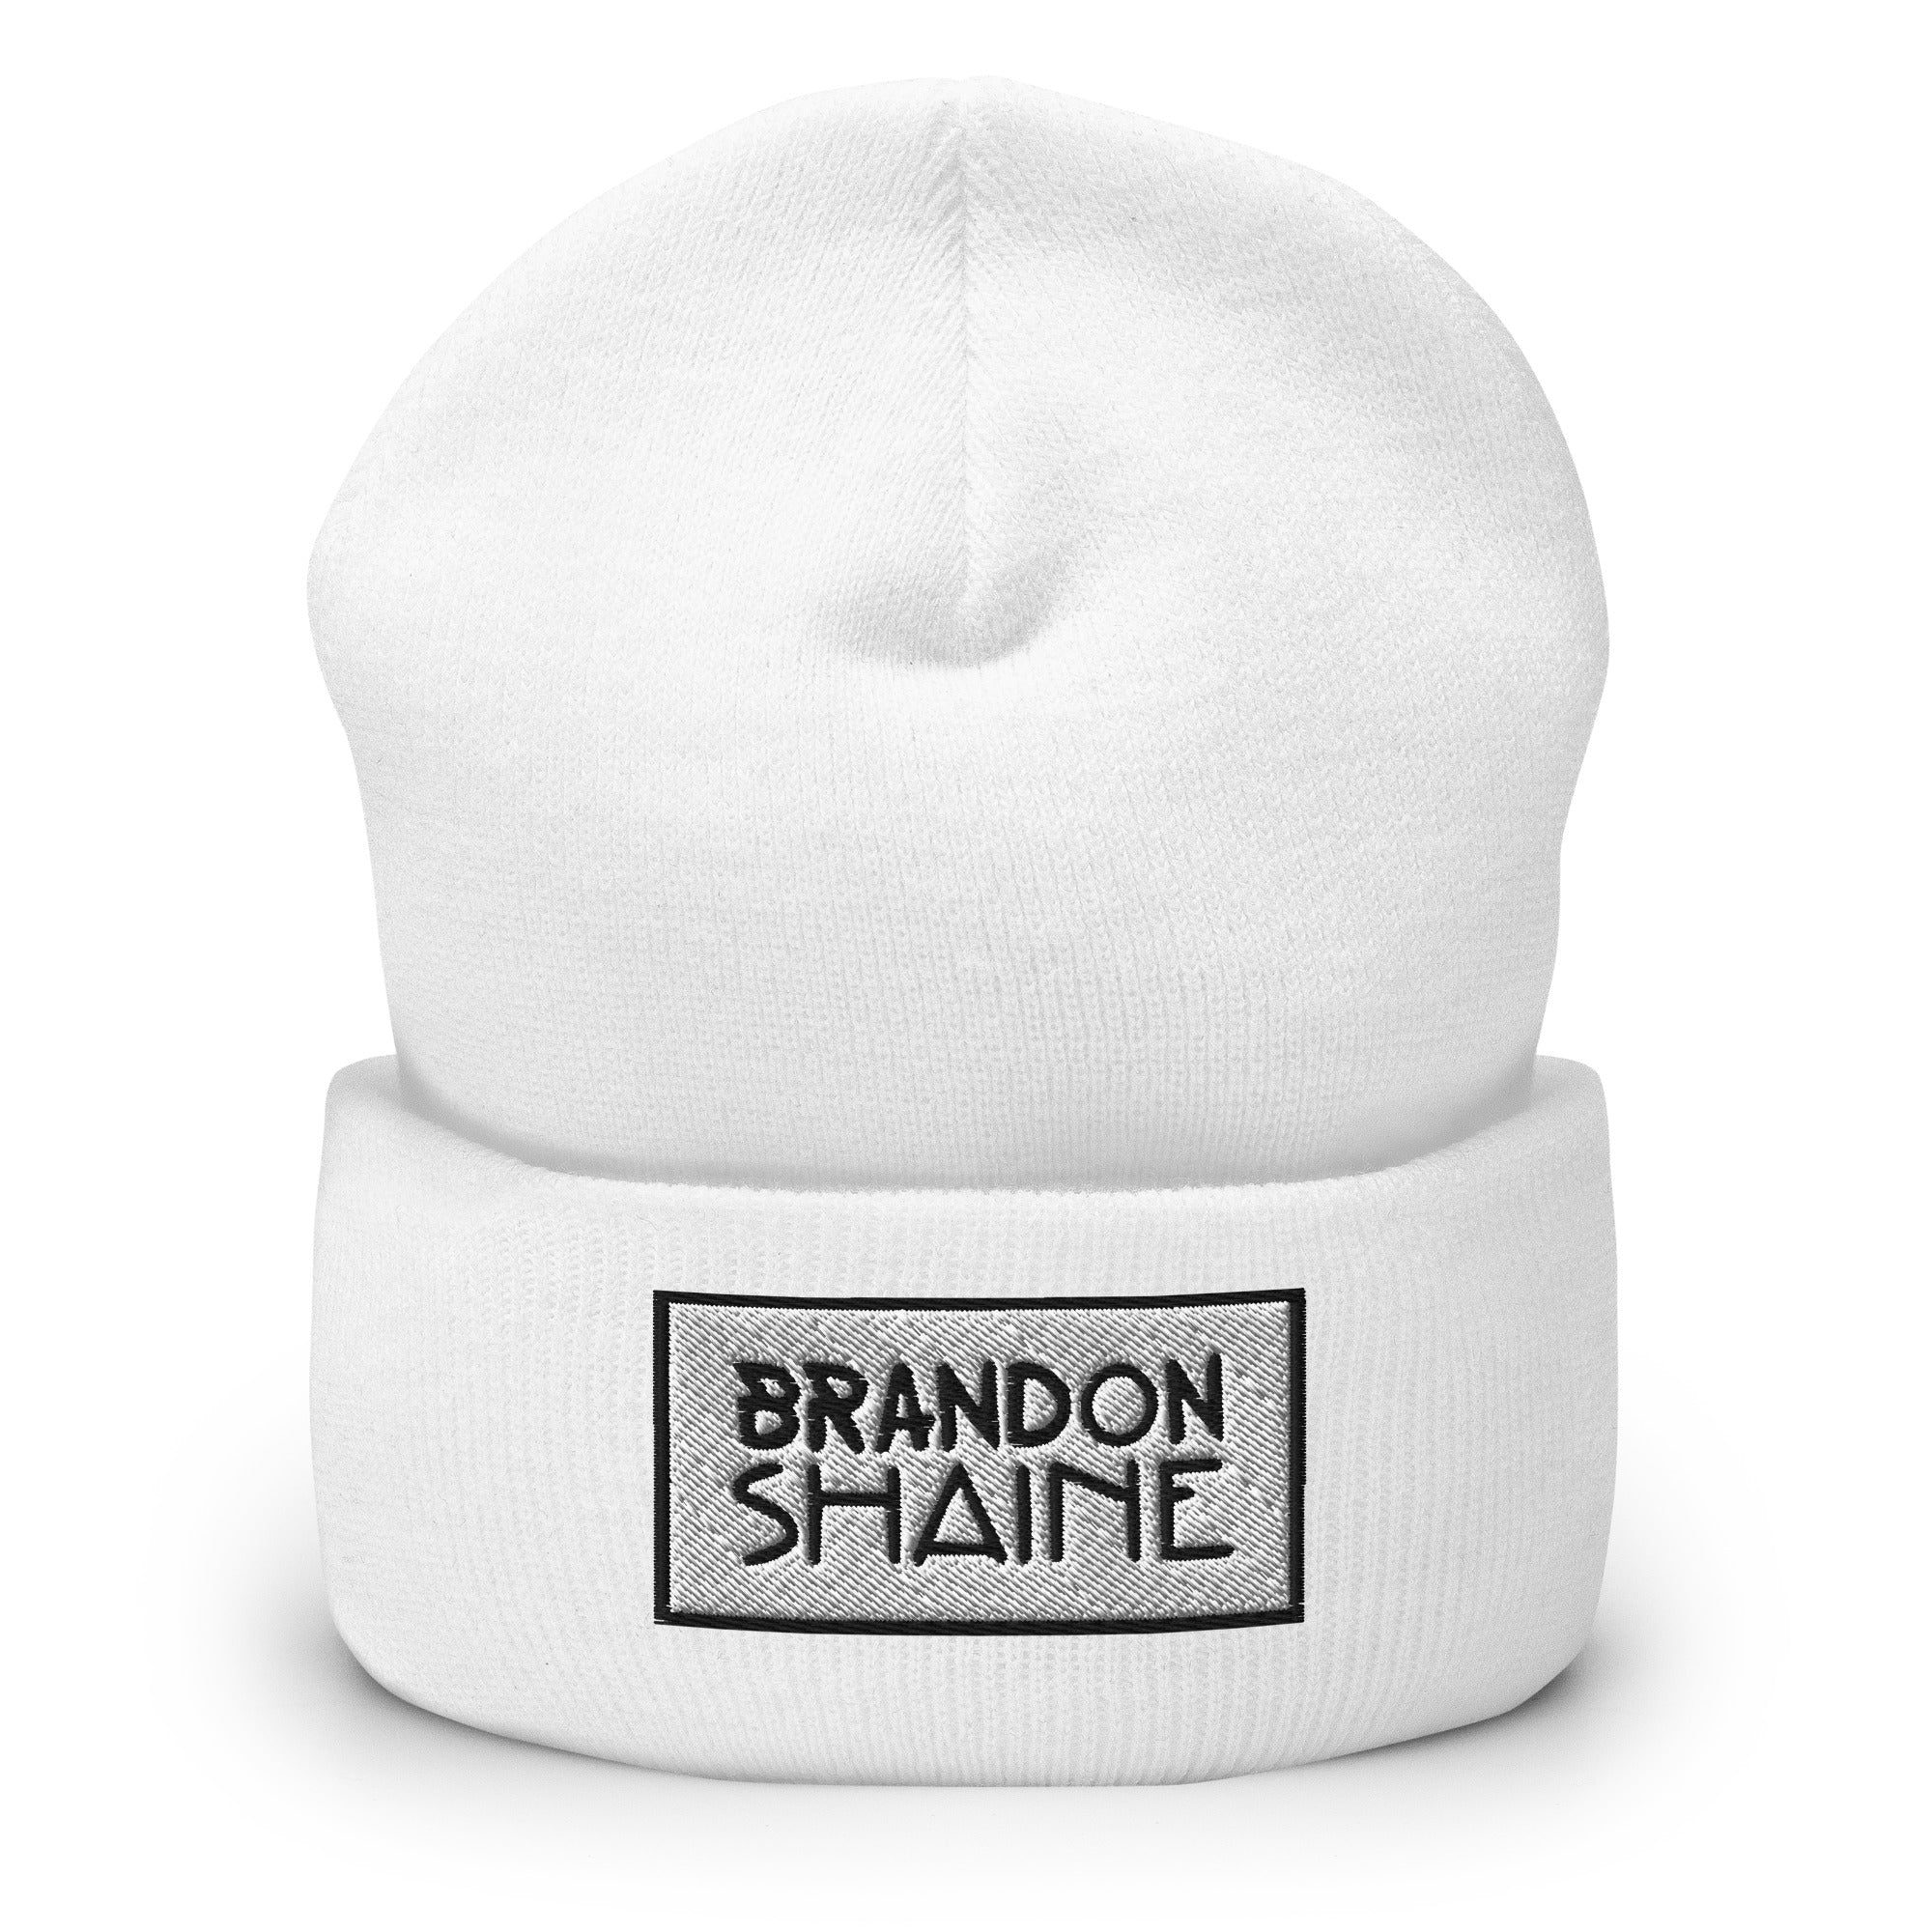 Brandon Shaine - Cuffed Beanie